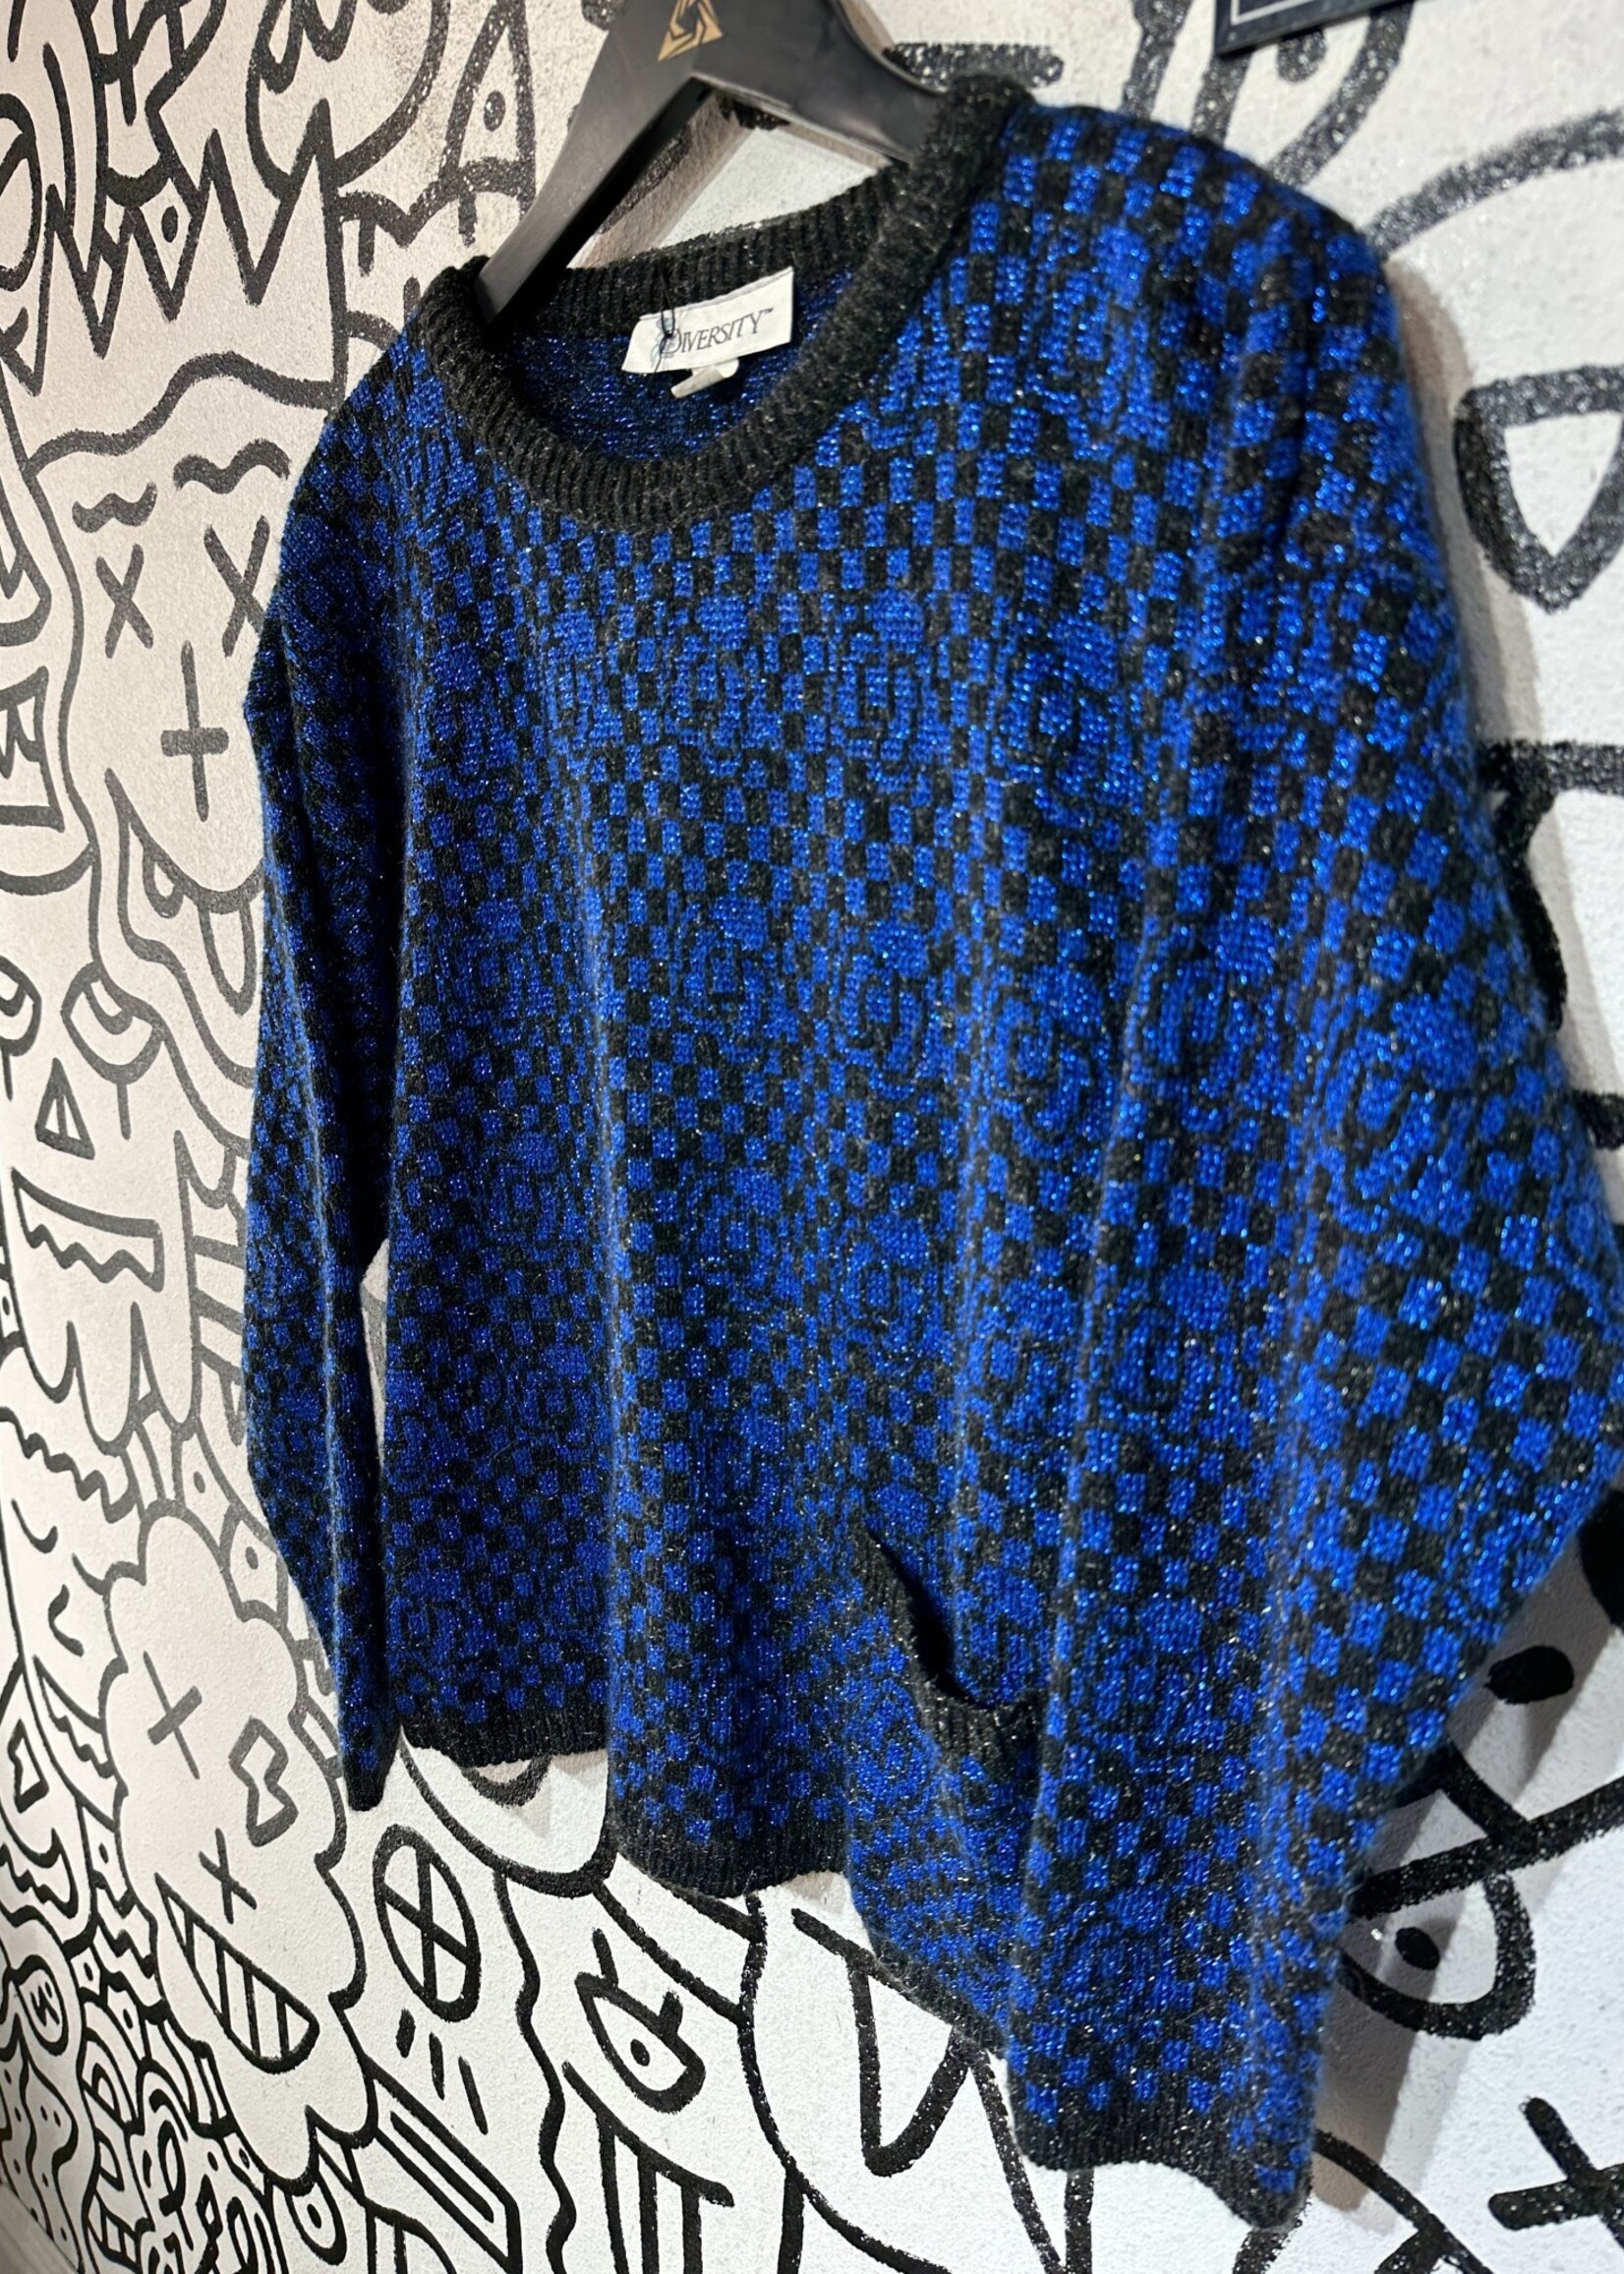 Diversity Vintage Blue Black Sweater Fem S